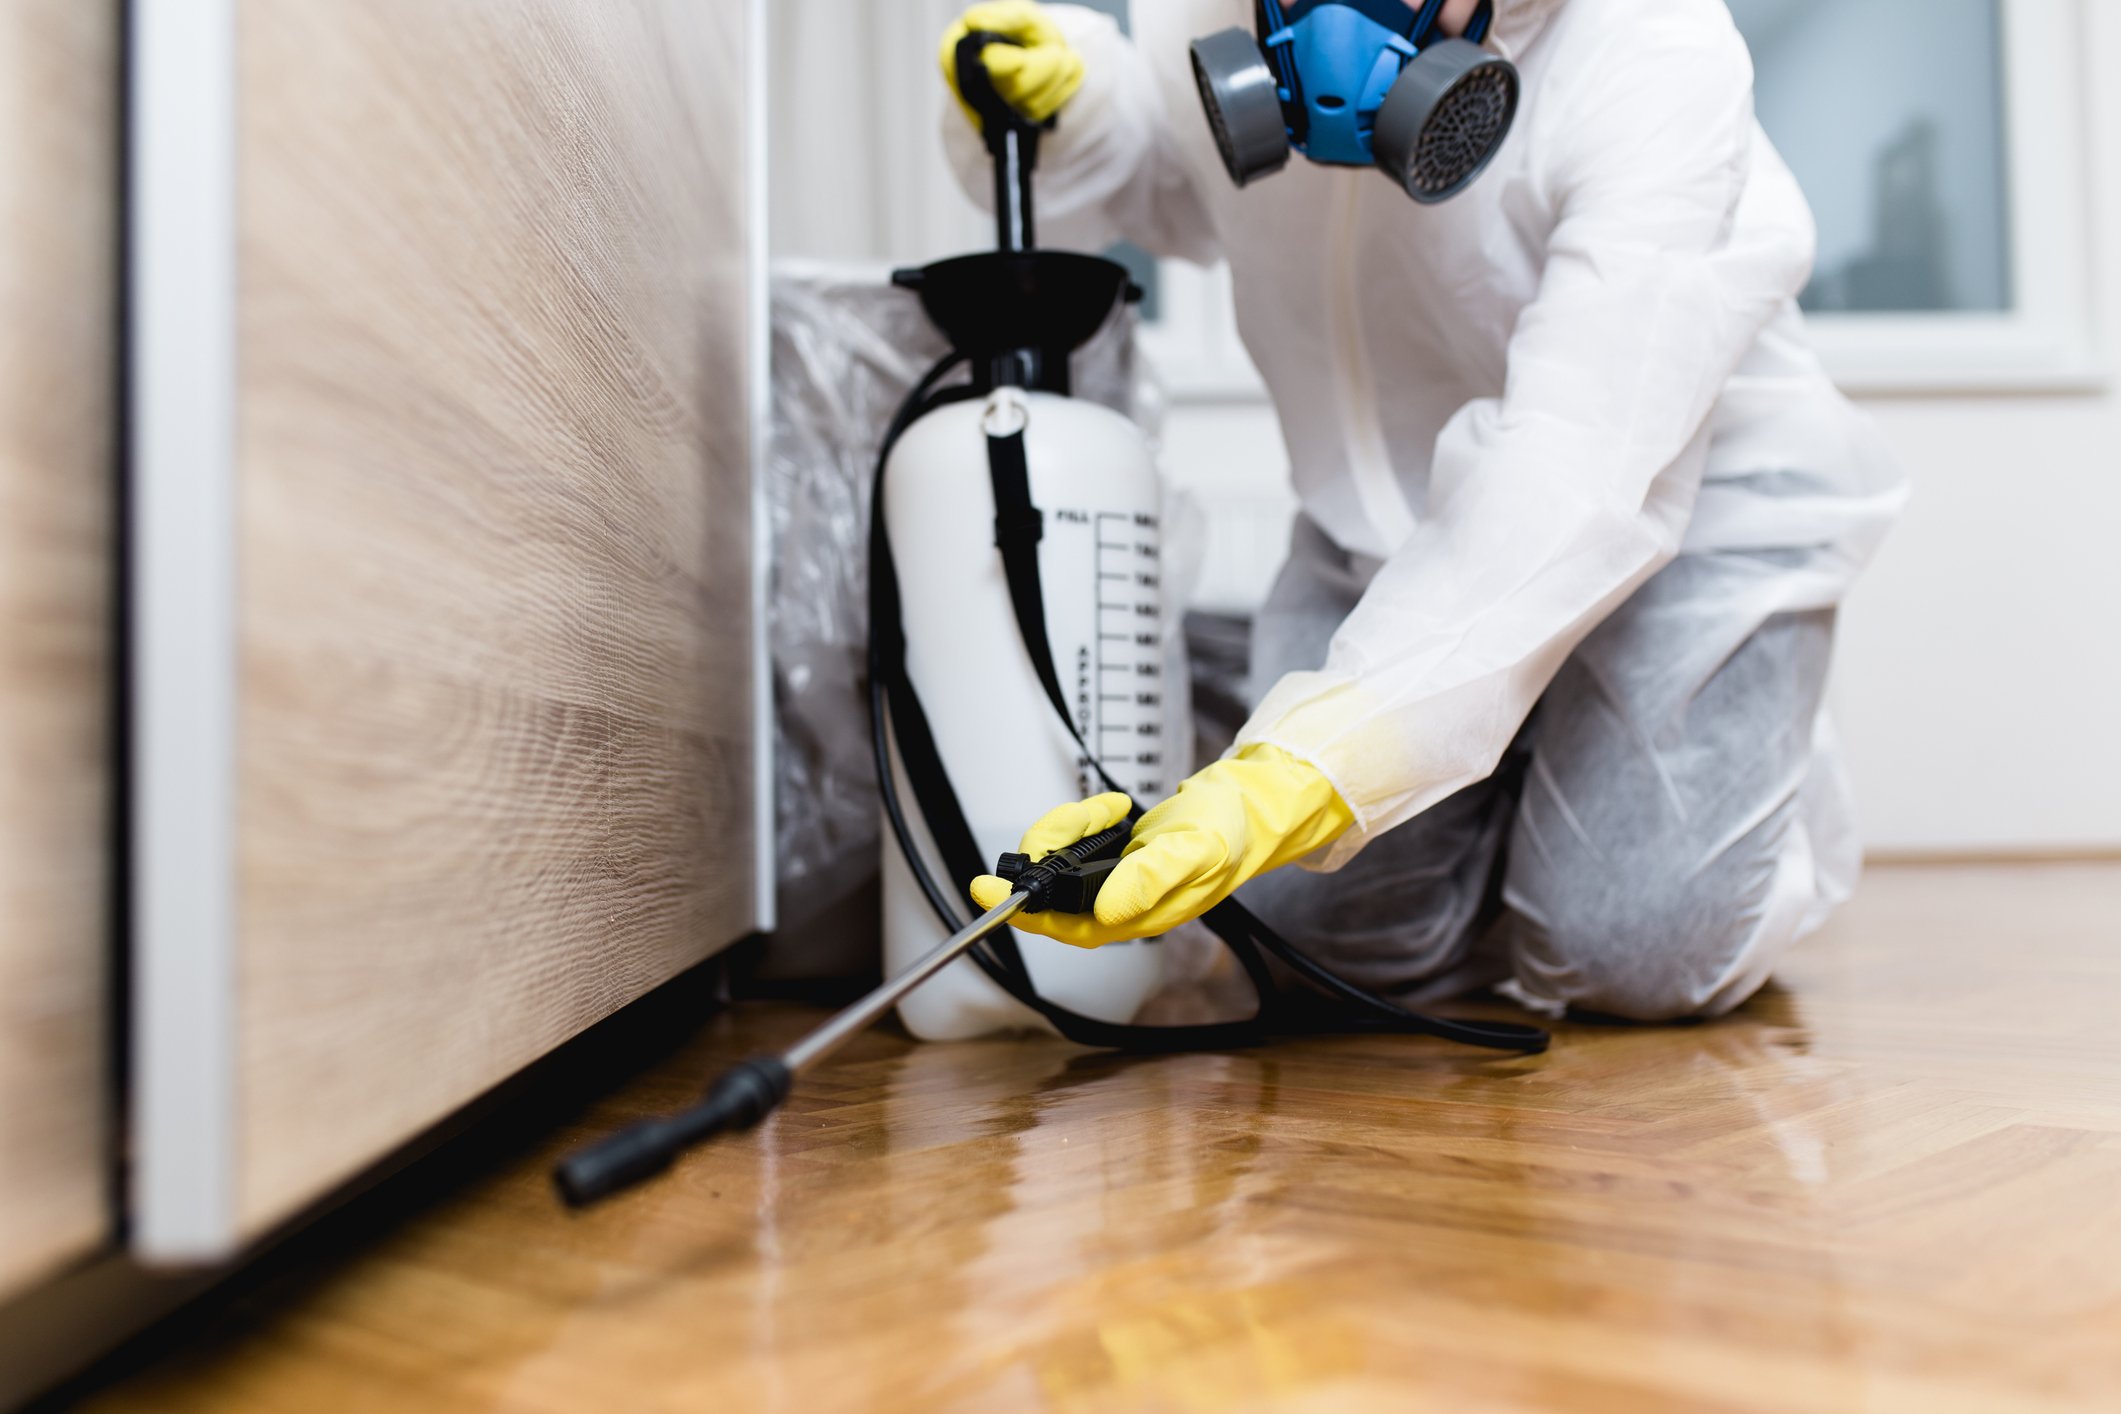 Foto eines Kammerjägers in Arbeitskleidung, der Pestizide oder Insektizide mit einem Sprühgerät versprüht | Quelle: Getty Images